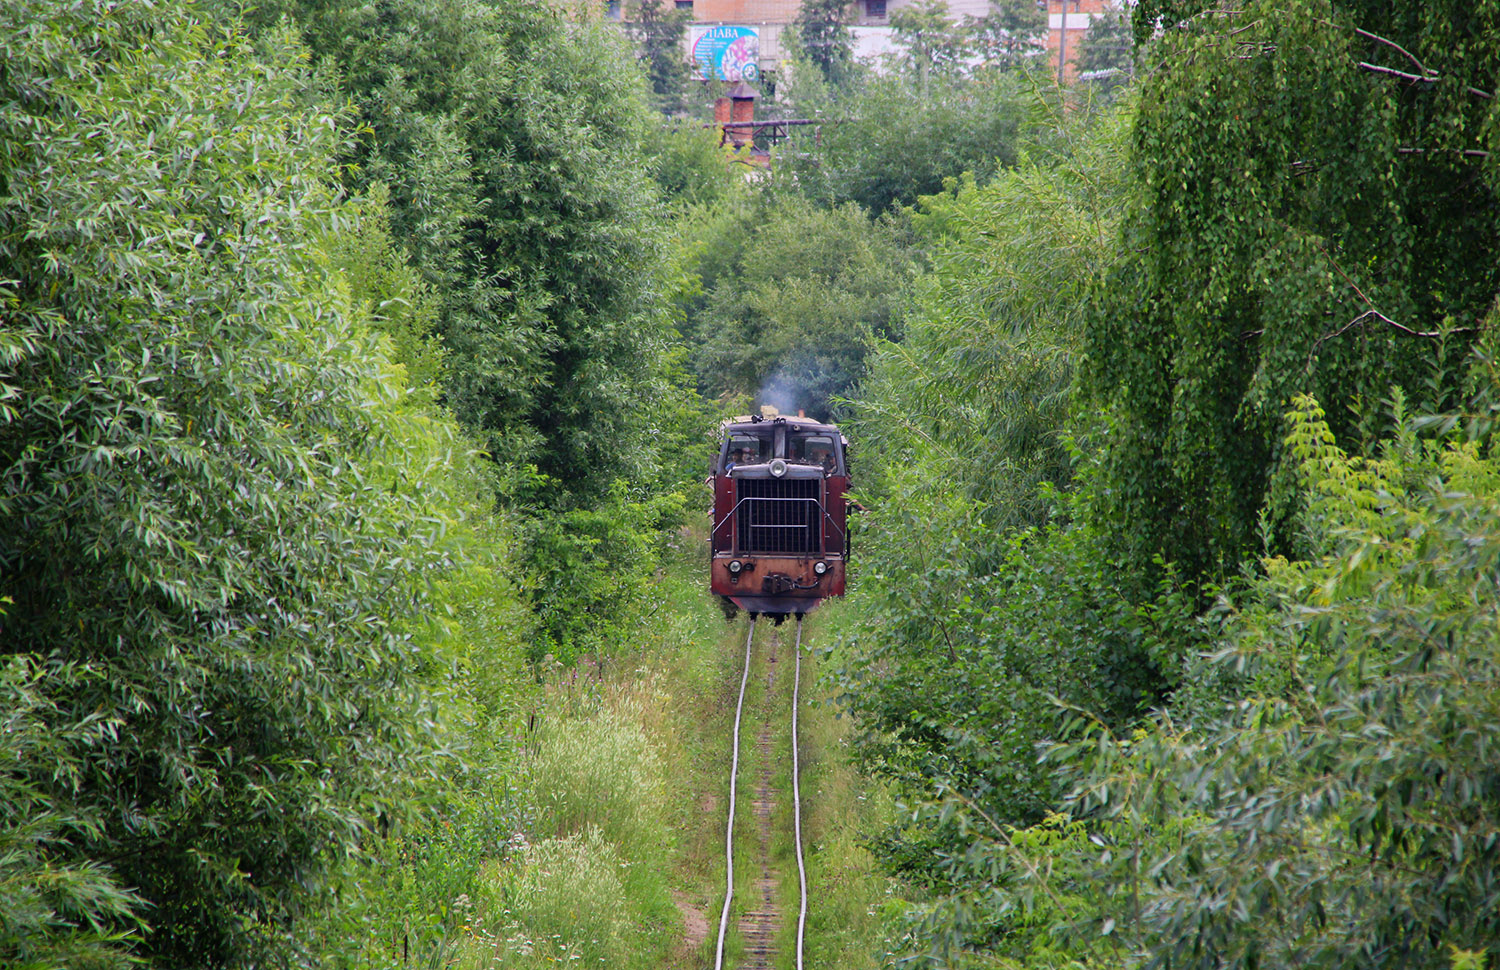 ТУ7А-3322; Горьковская железная дорога — Перегоны; Фотозарисовки (Горьковская железная дорога)